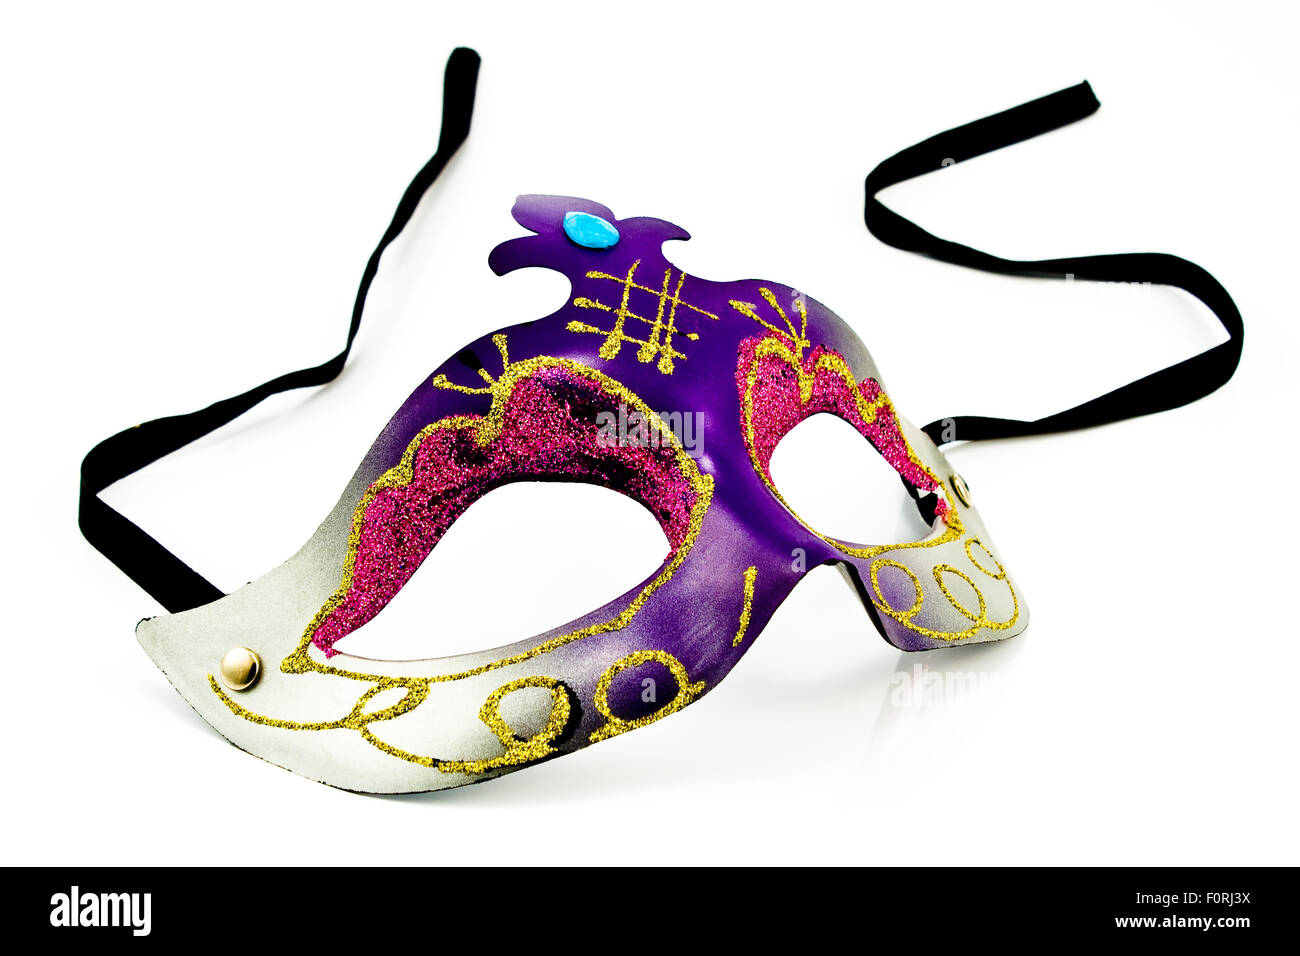 Laboratorio de Creación de Máscaras de Carnaval